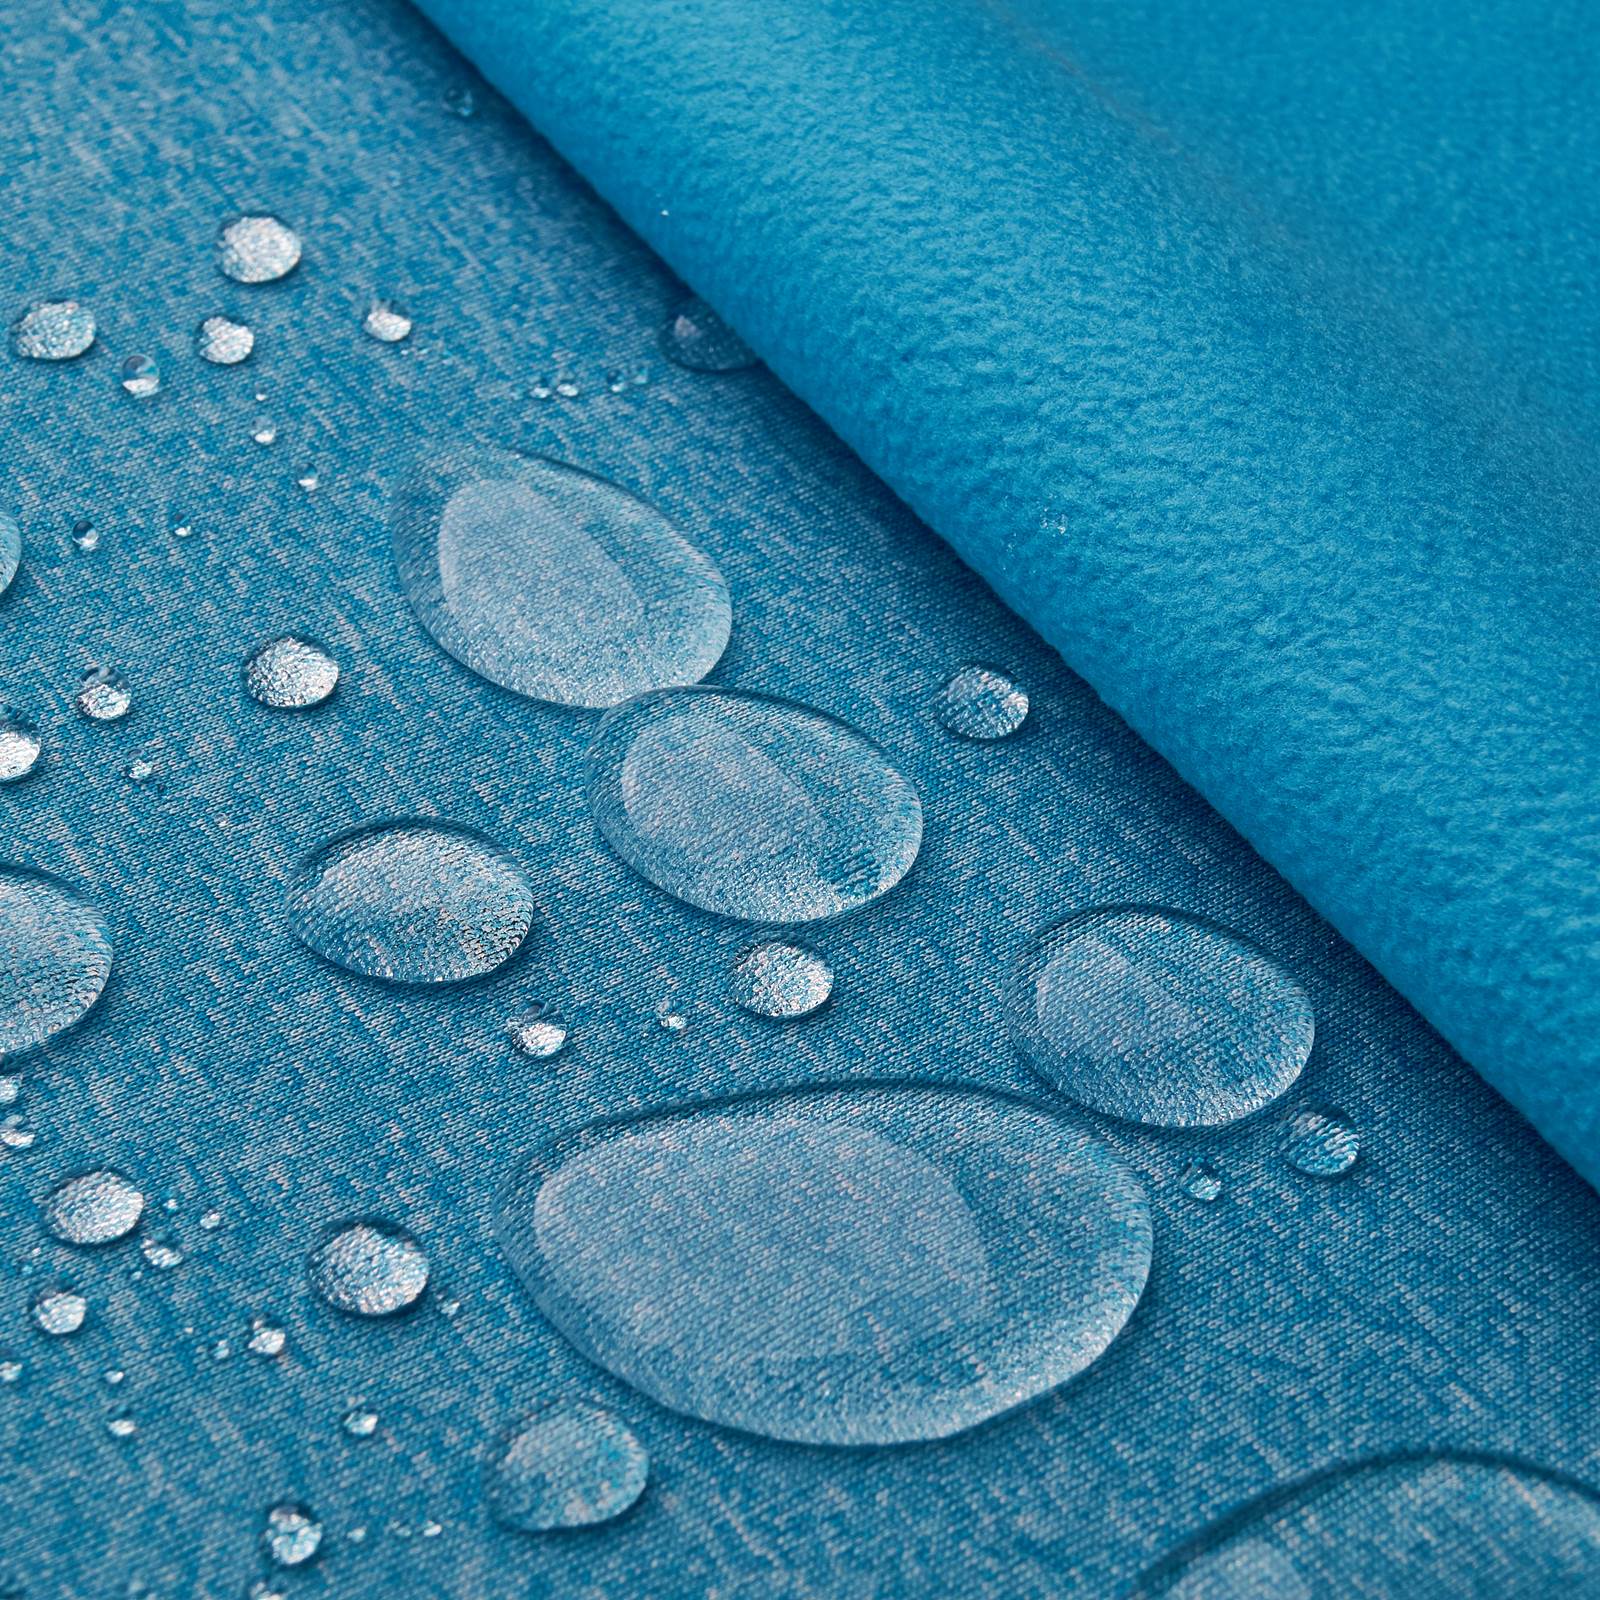 Melly - Softshell avec membrane climatique (turquoise mélange)